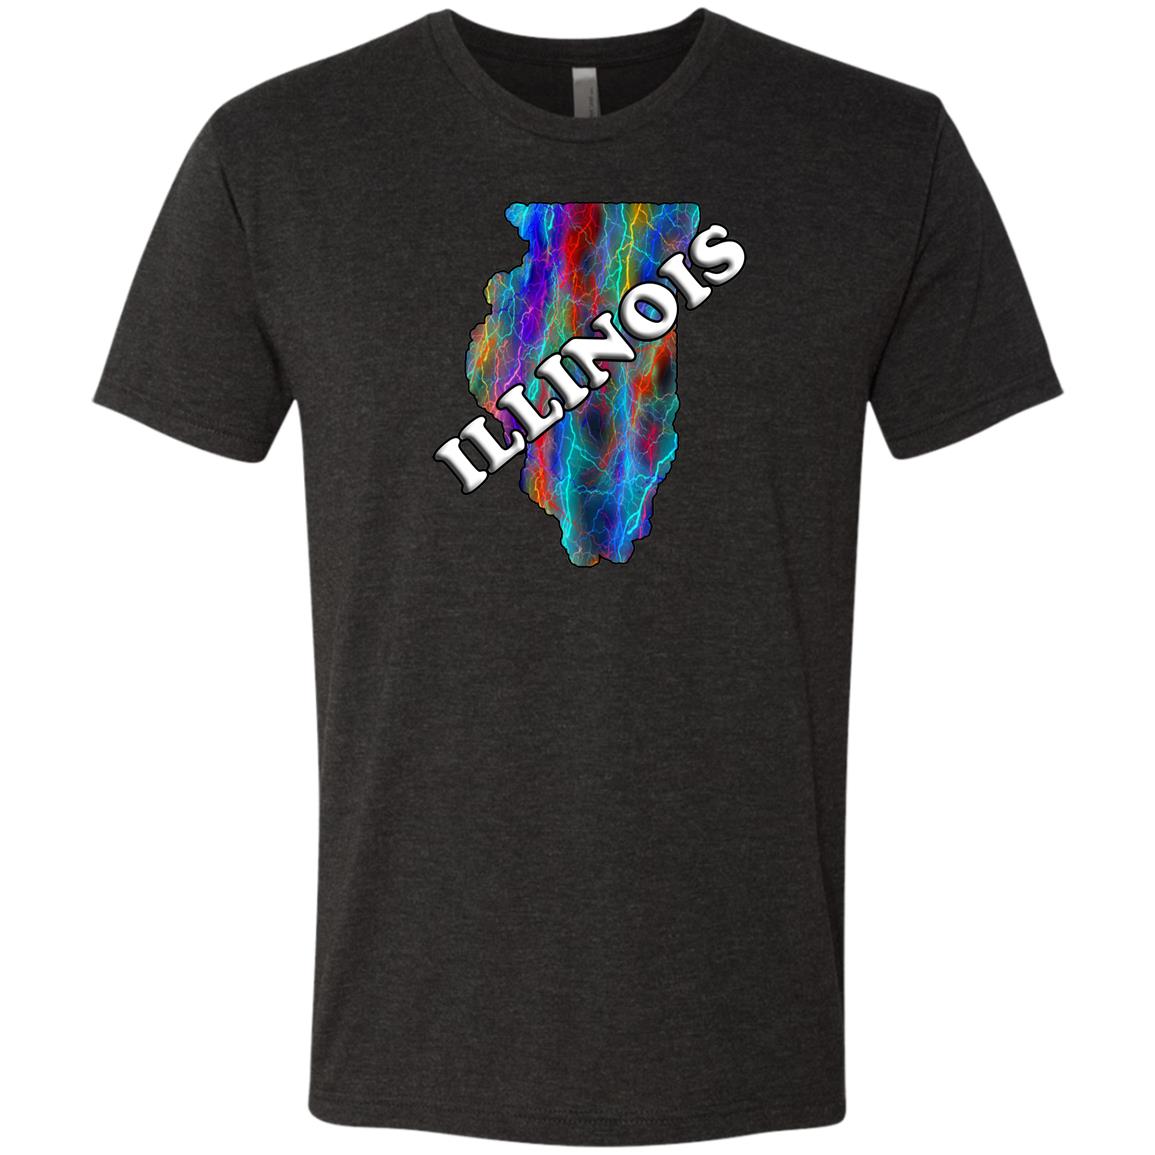 Illinois T-Shirt